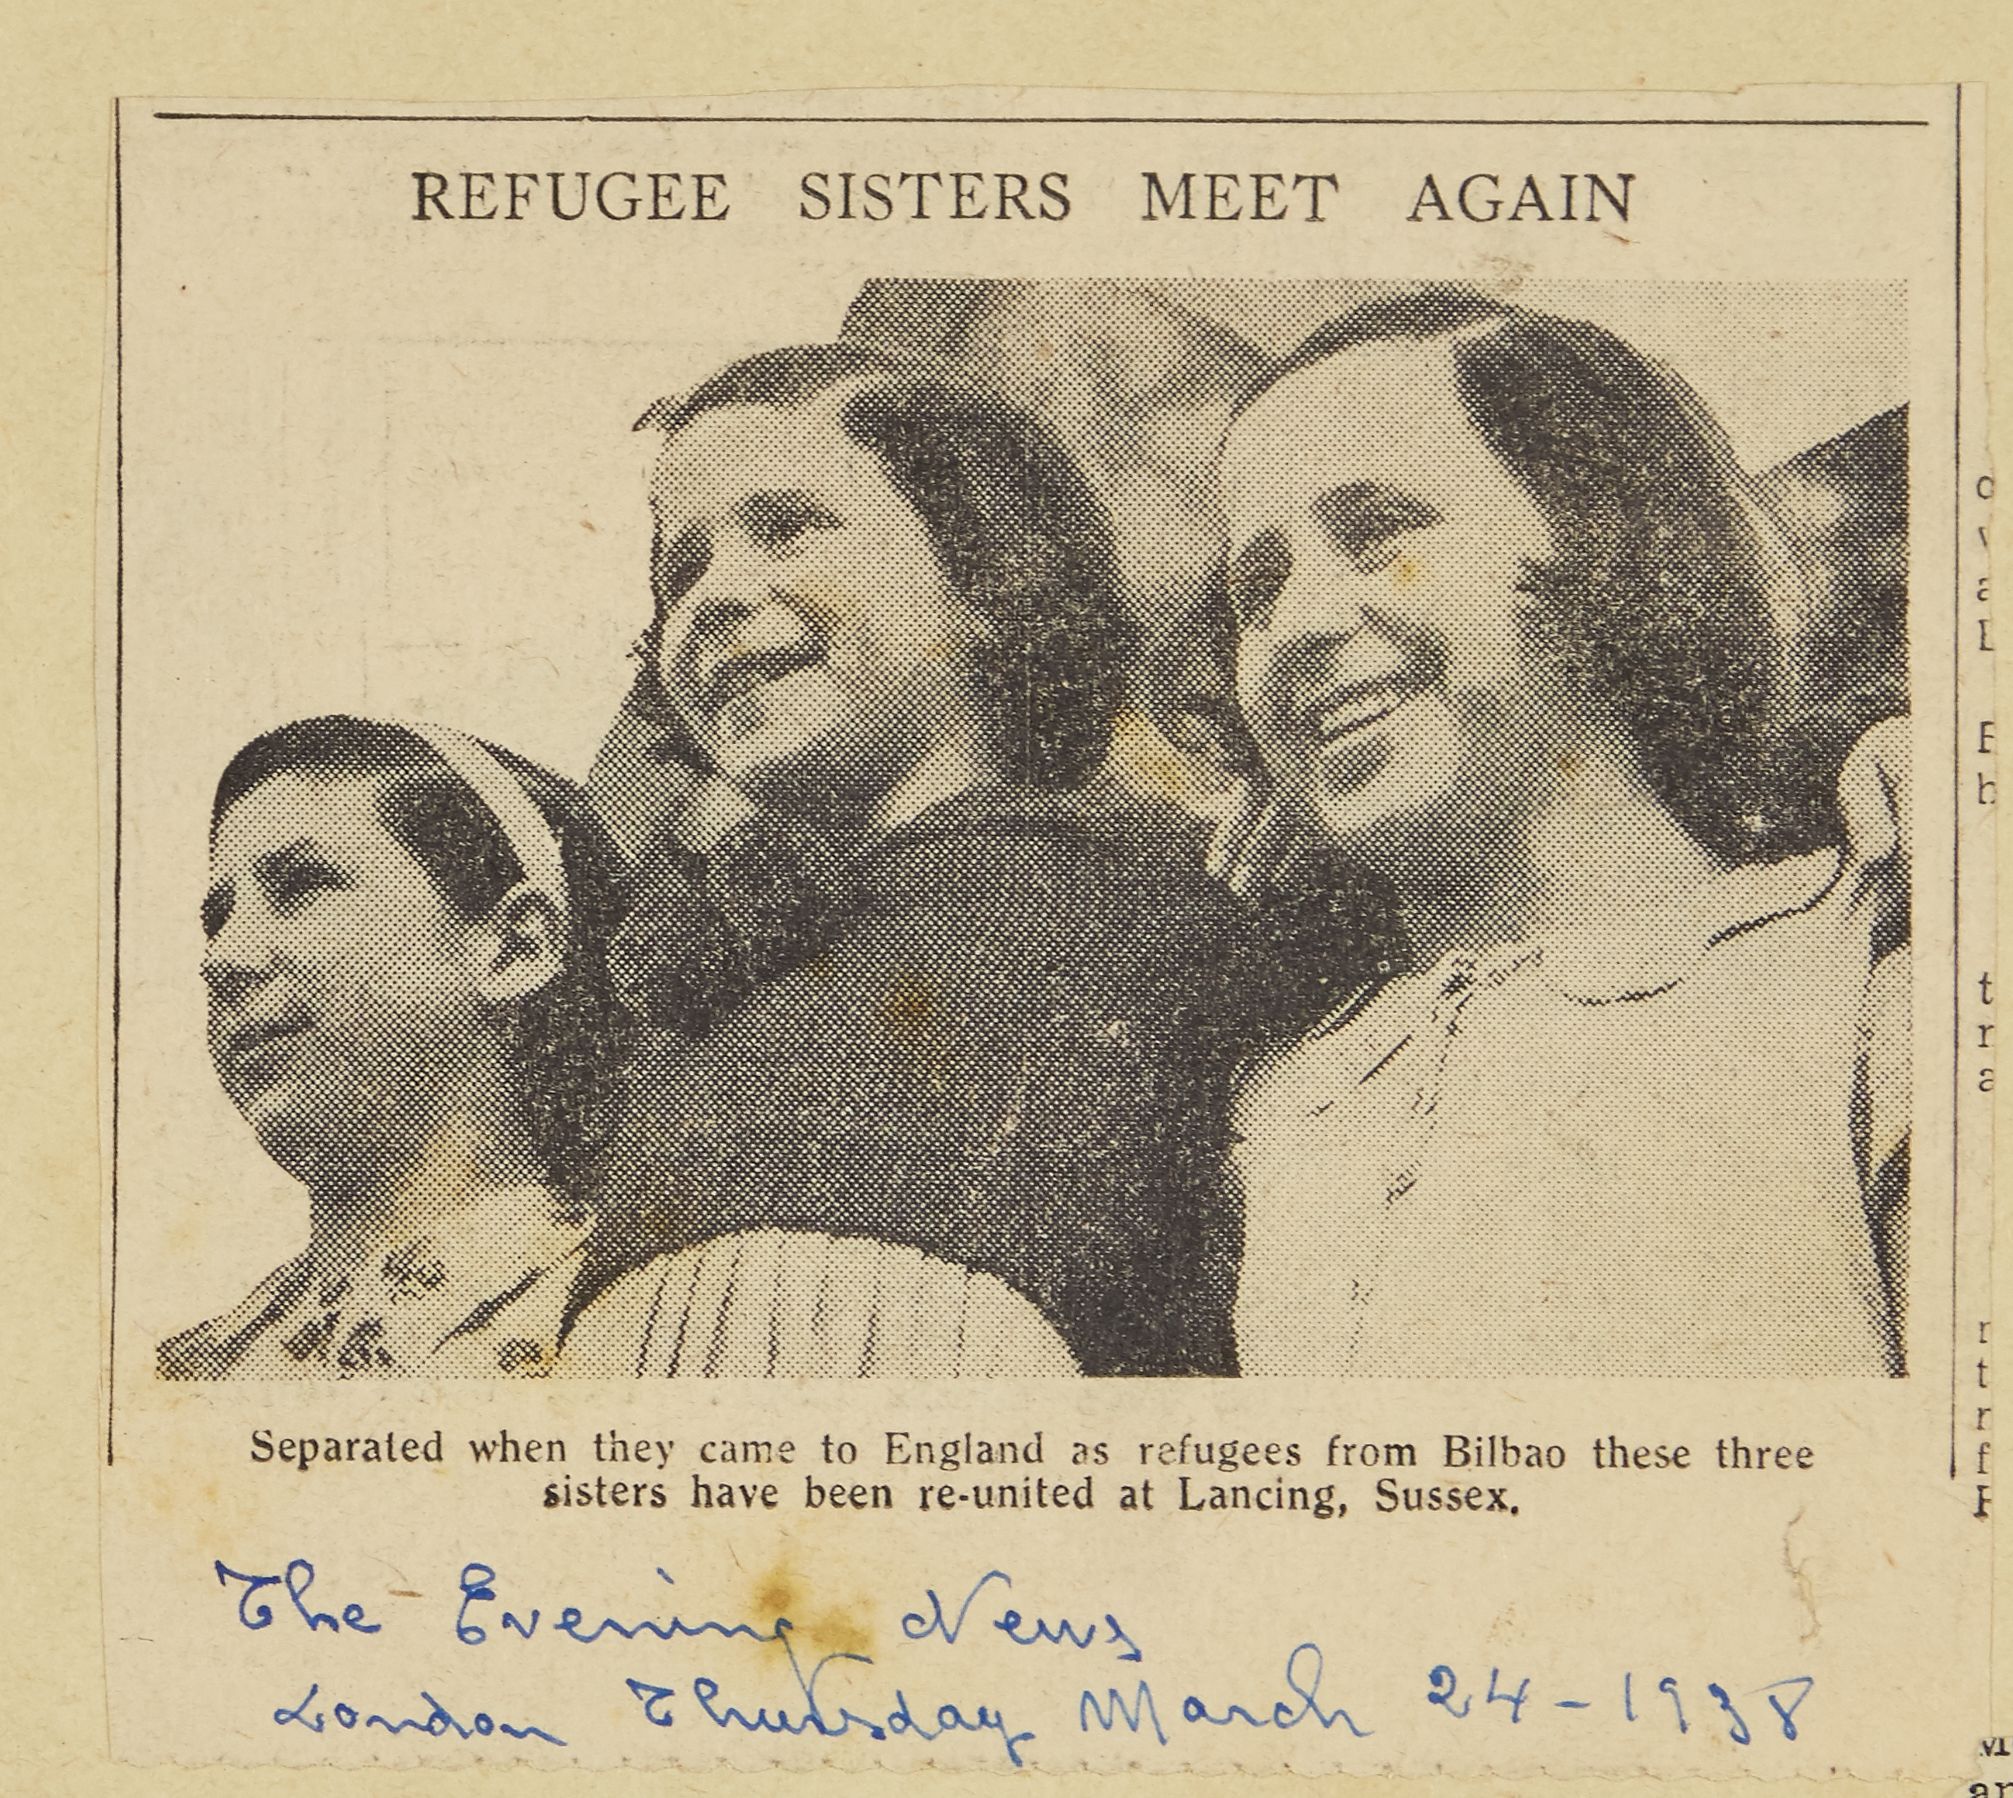 © Marx Memorial Library [діти евакуація великобританія сполучене королівство 20 століття історія refugee sisters meet again діти біженці]